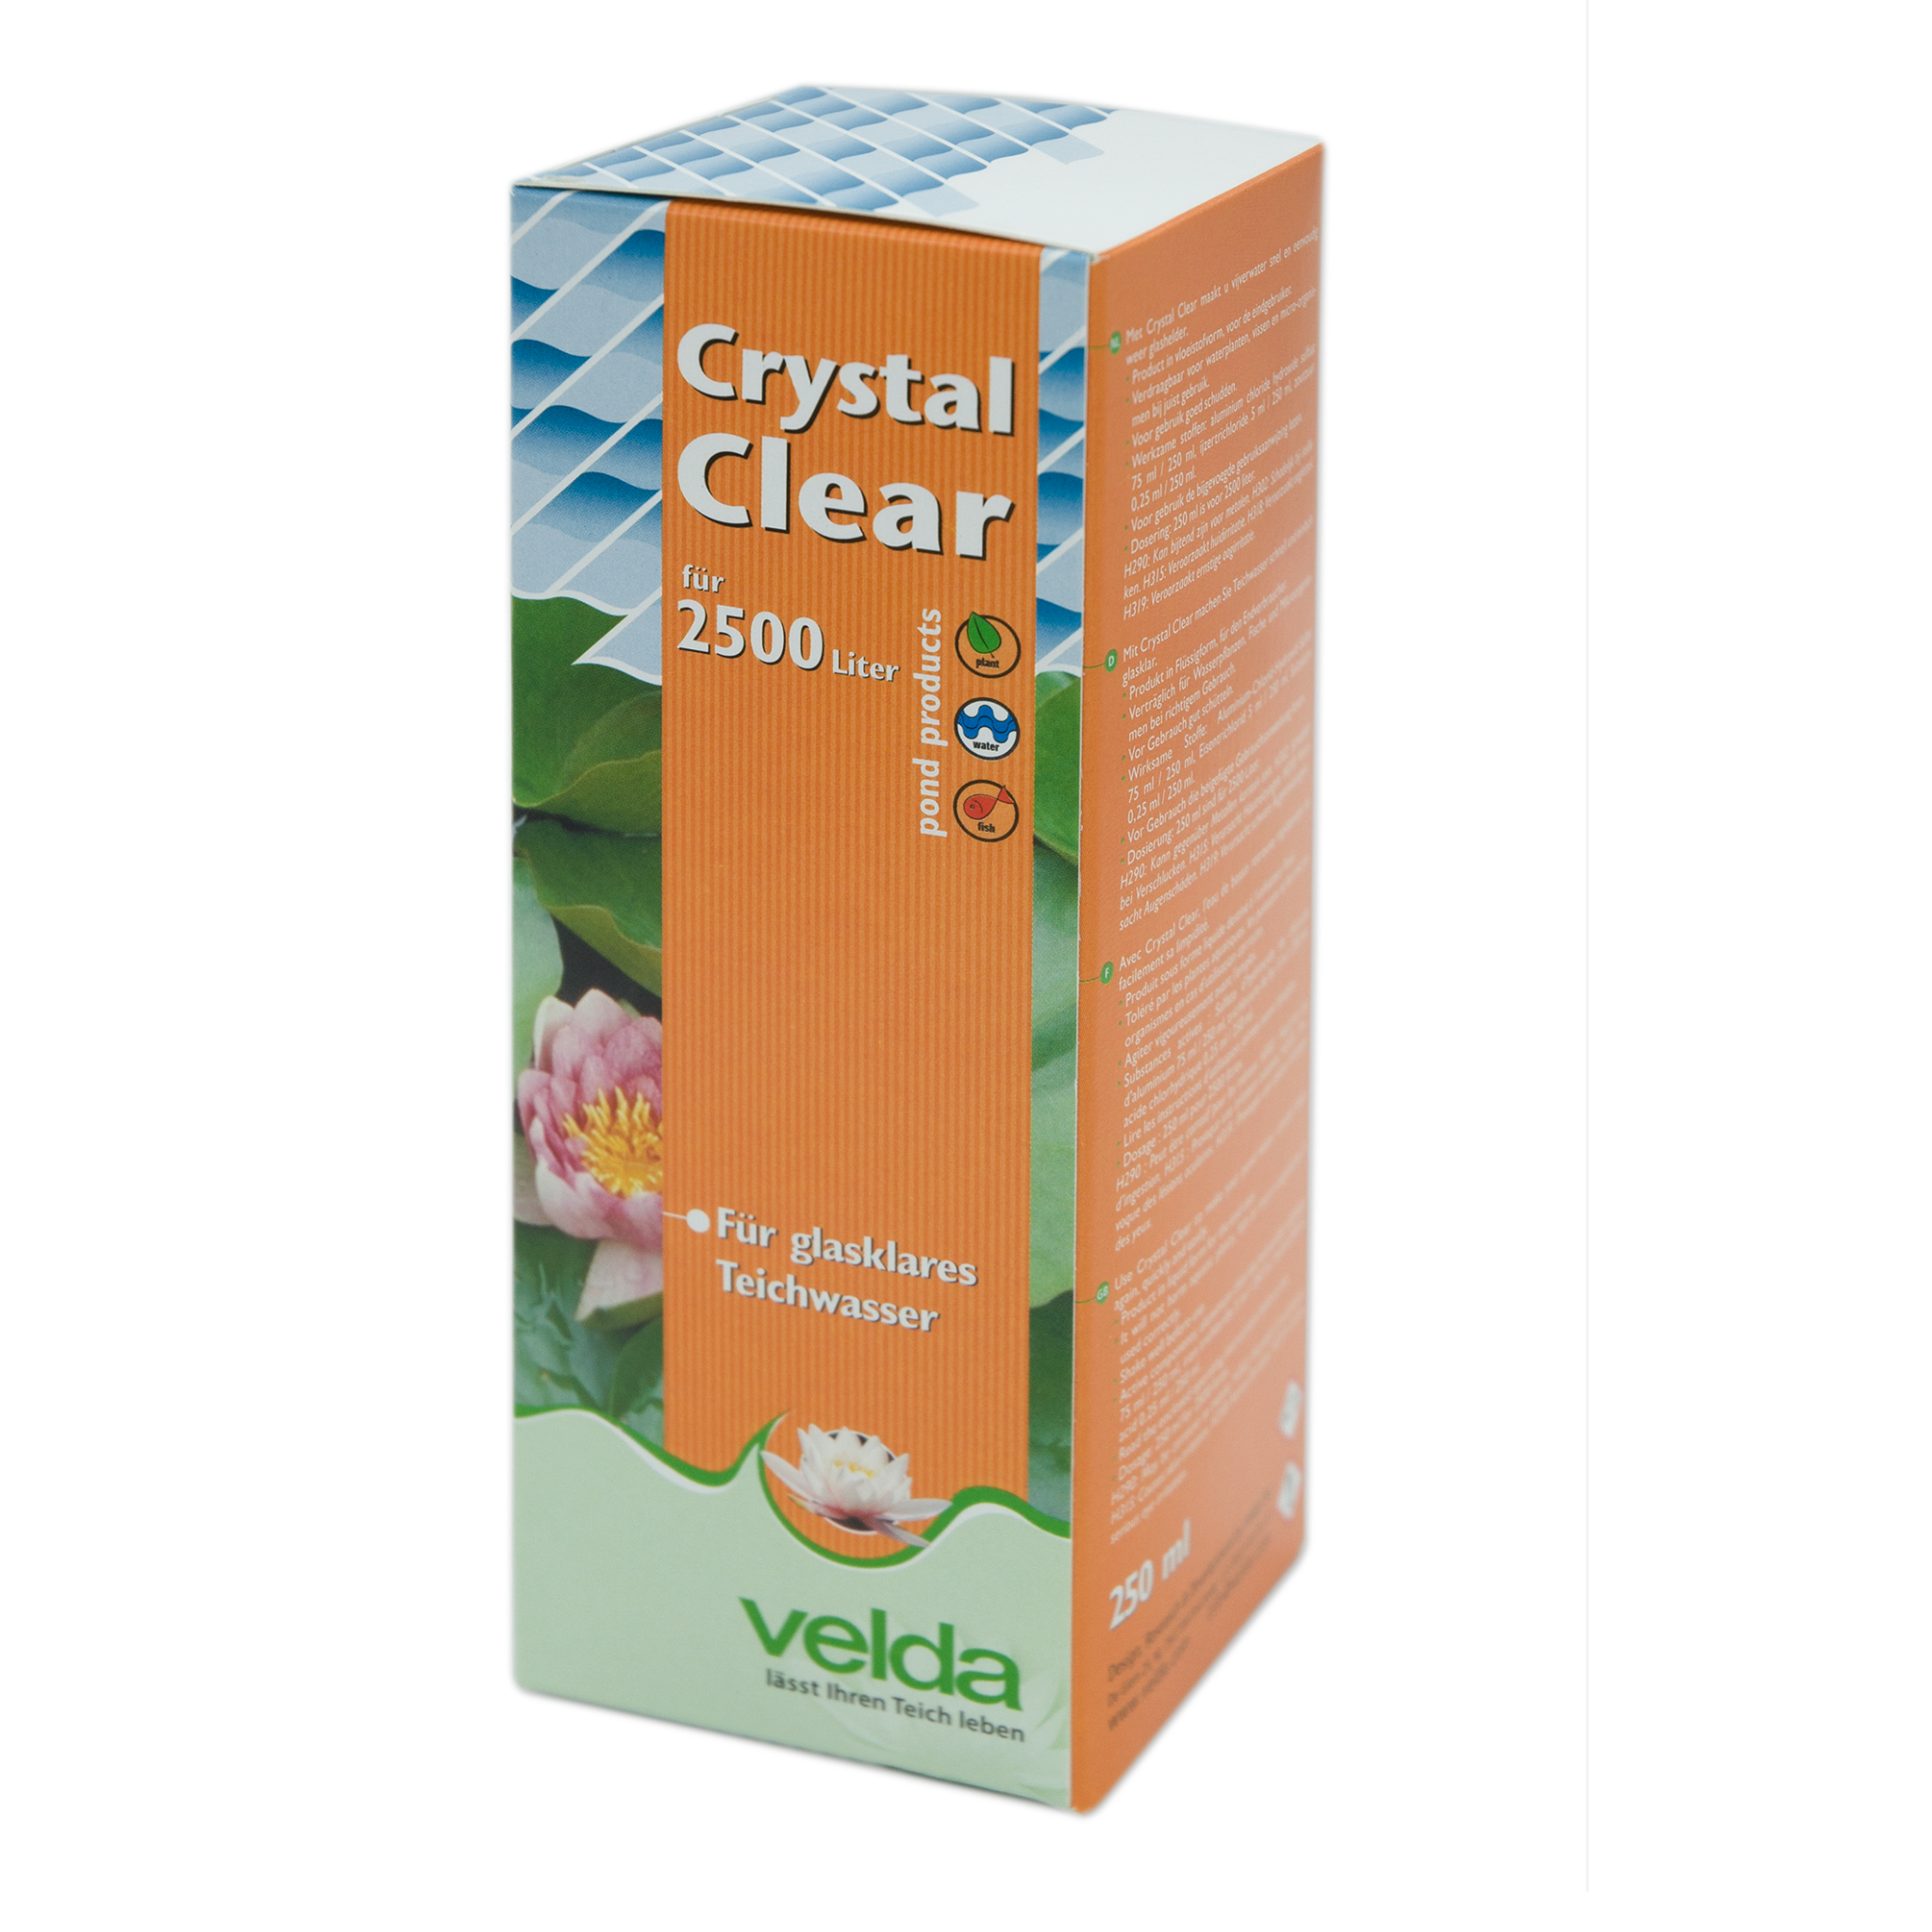 Crystal Clear 250 ml velda